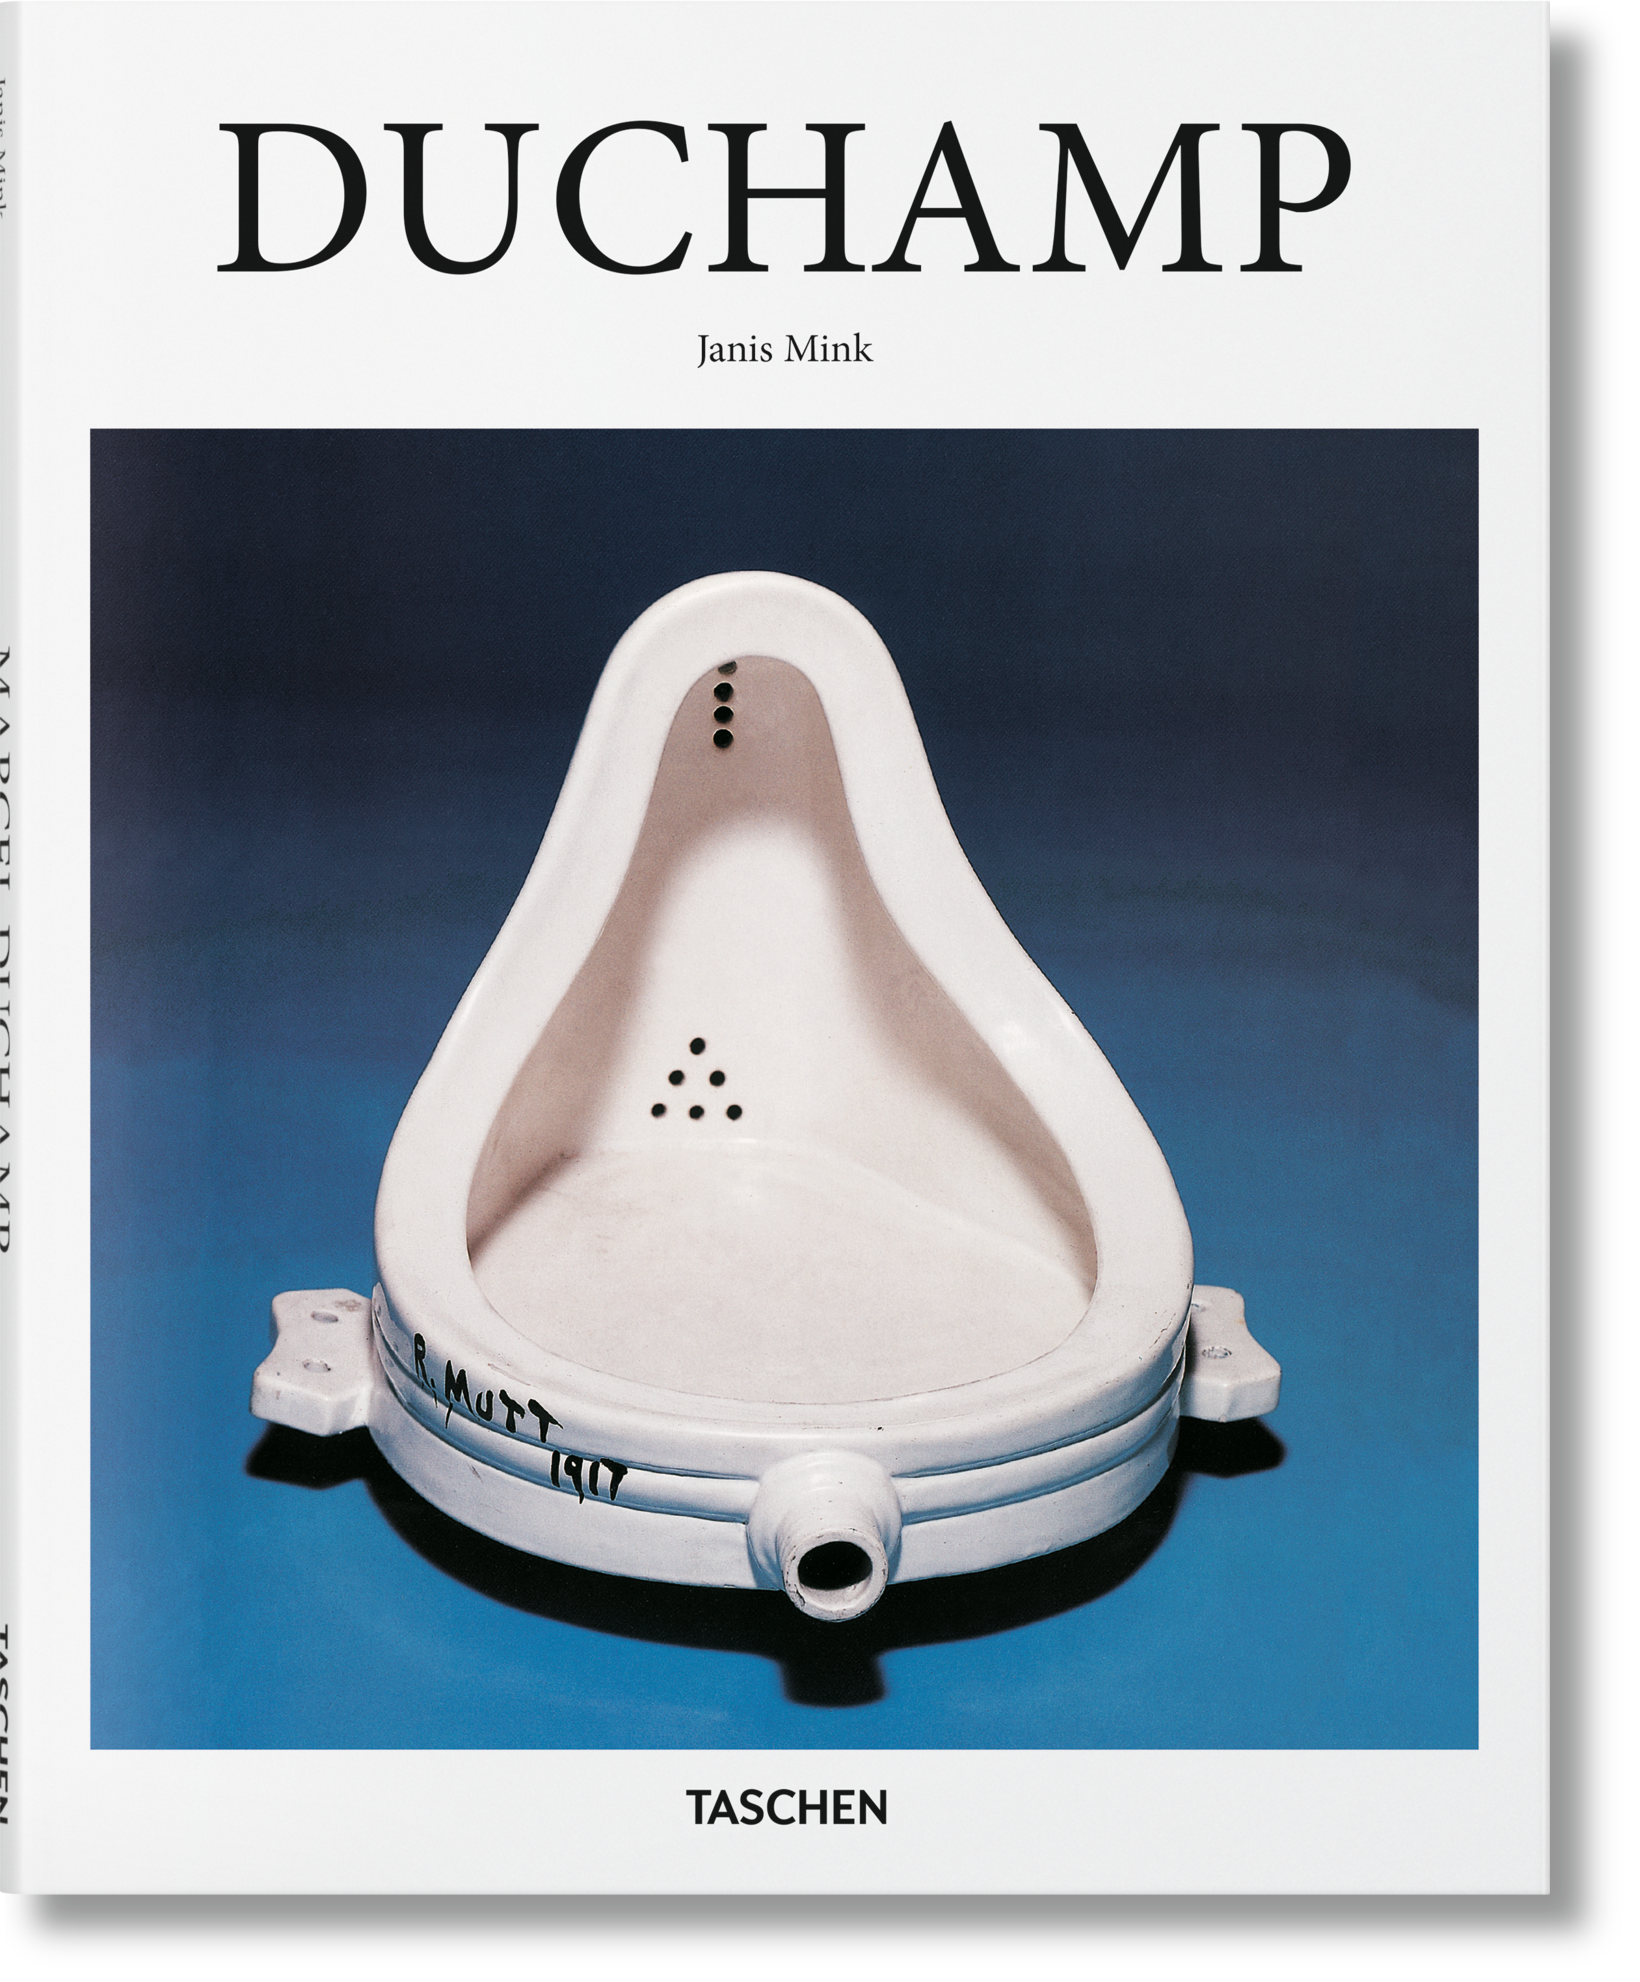 TASCHEN Books: Duchamp